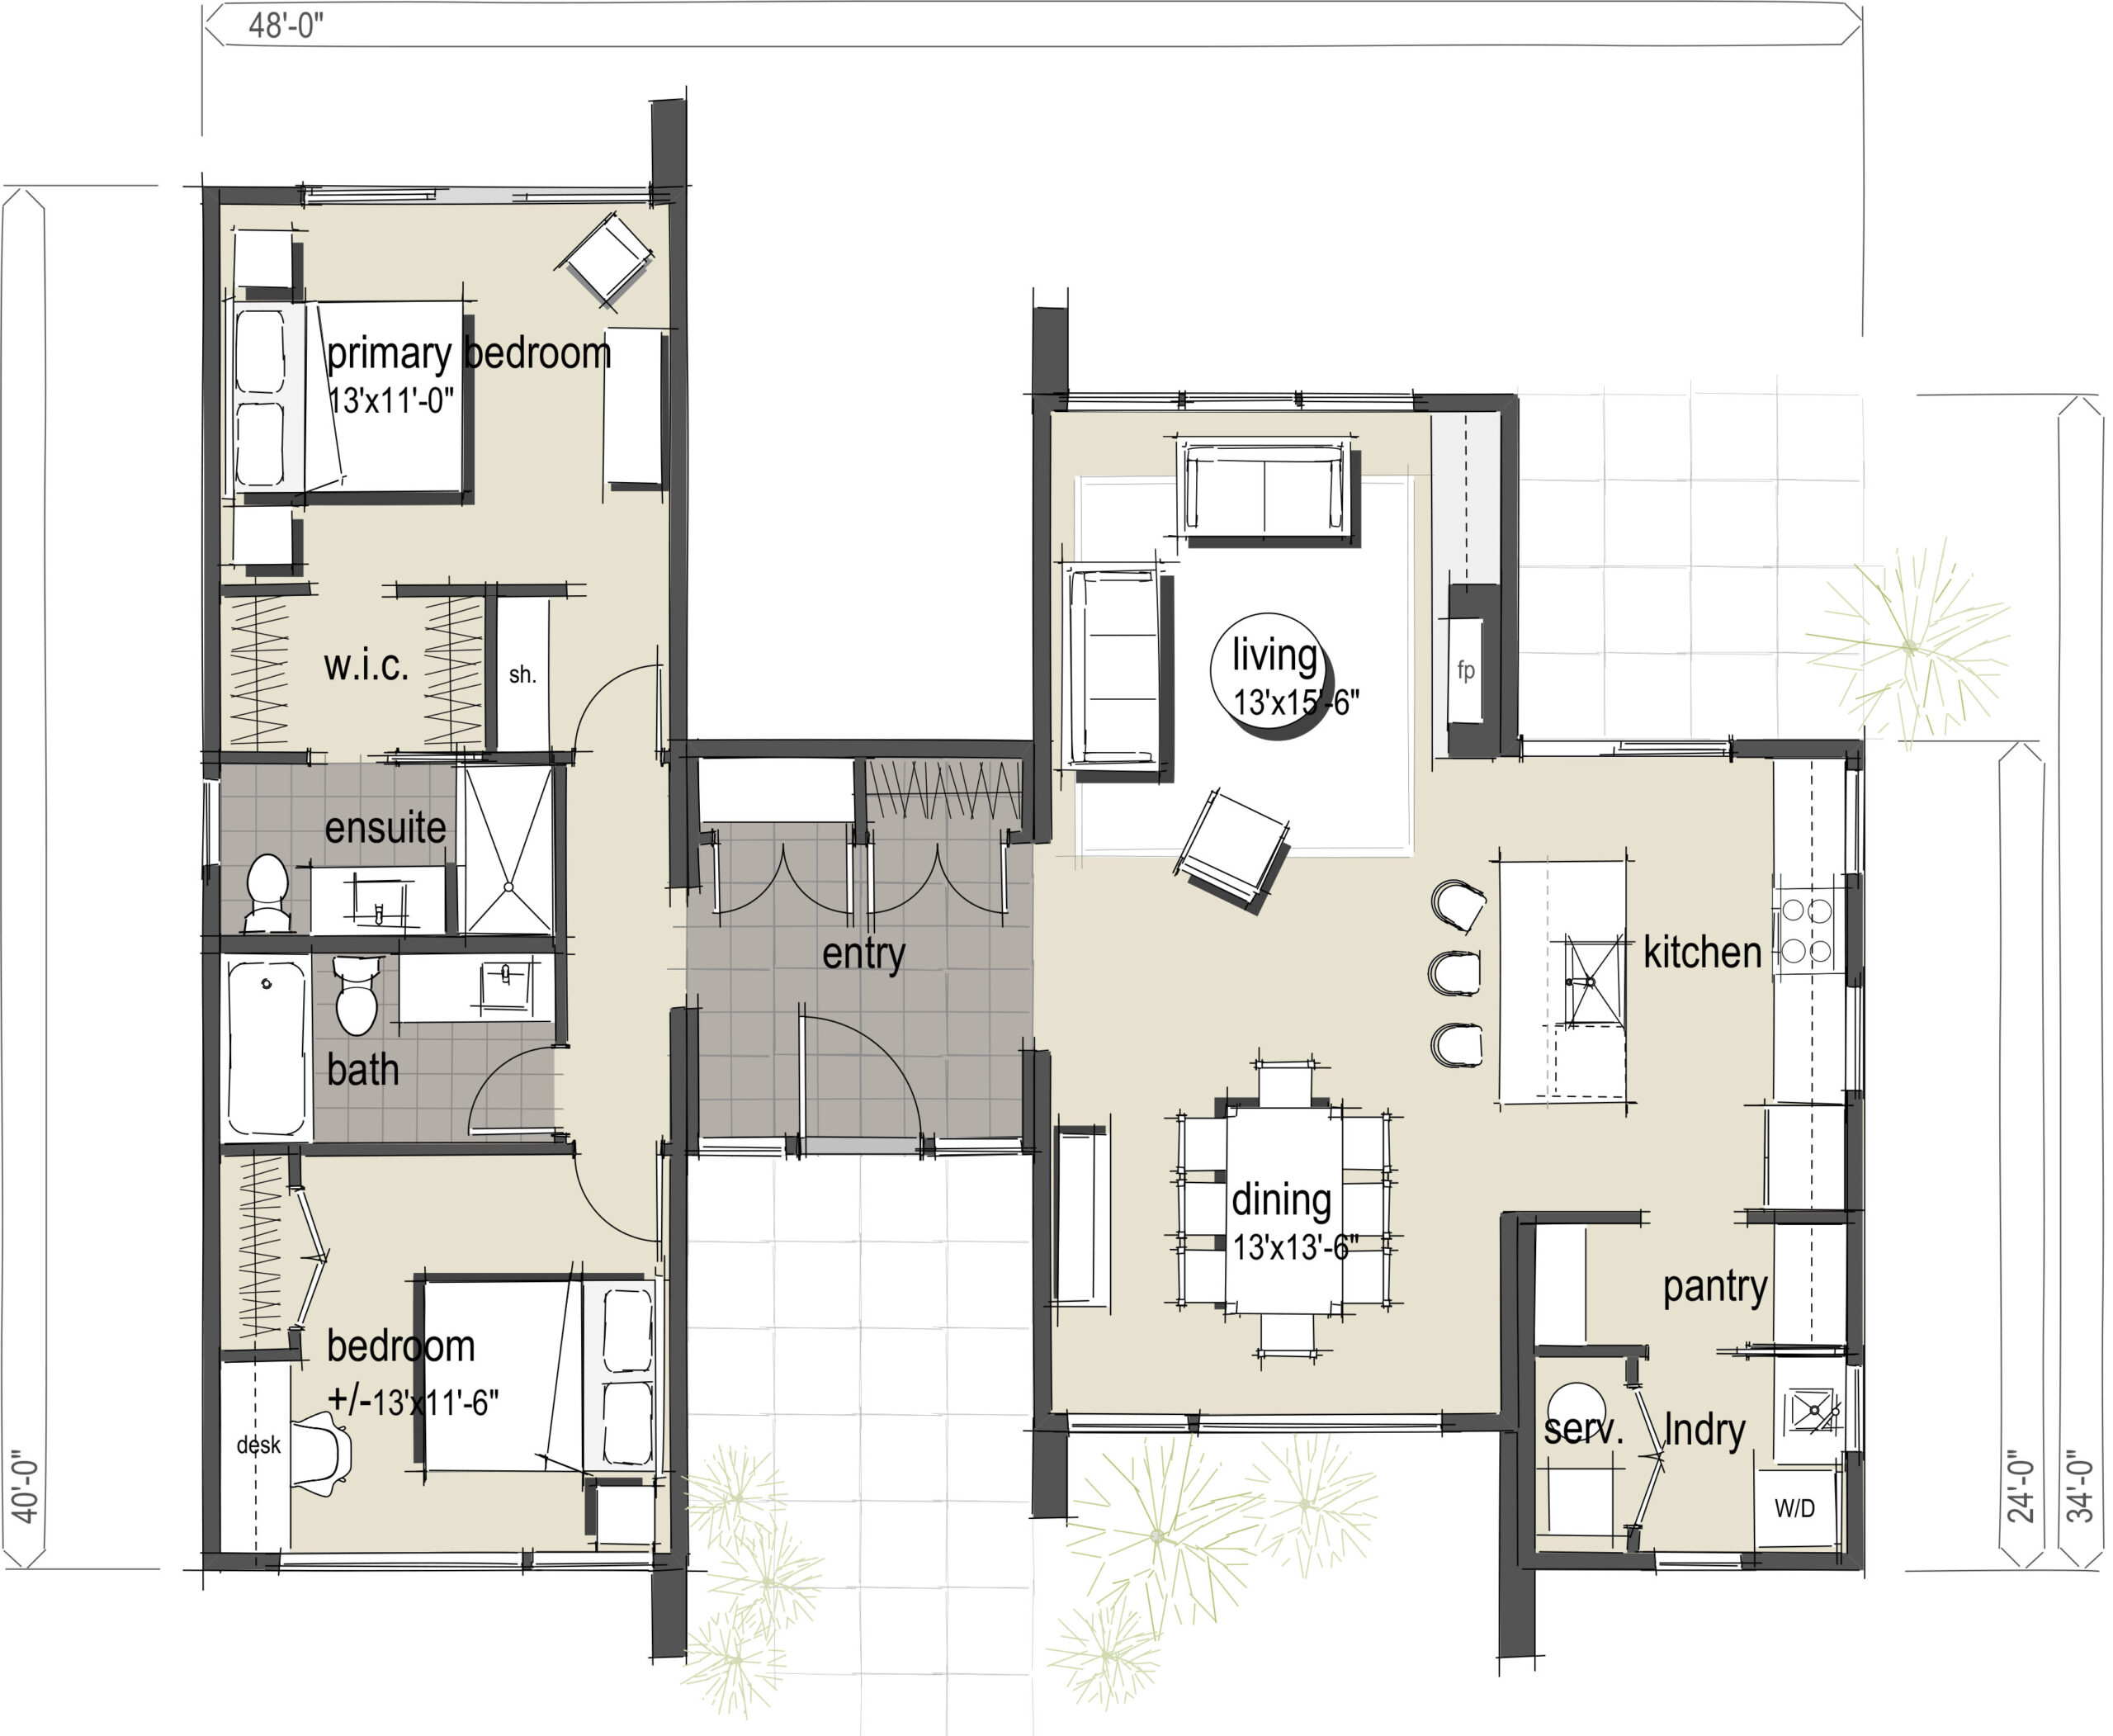 The Herringbone Modular Home Floorplan A